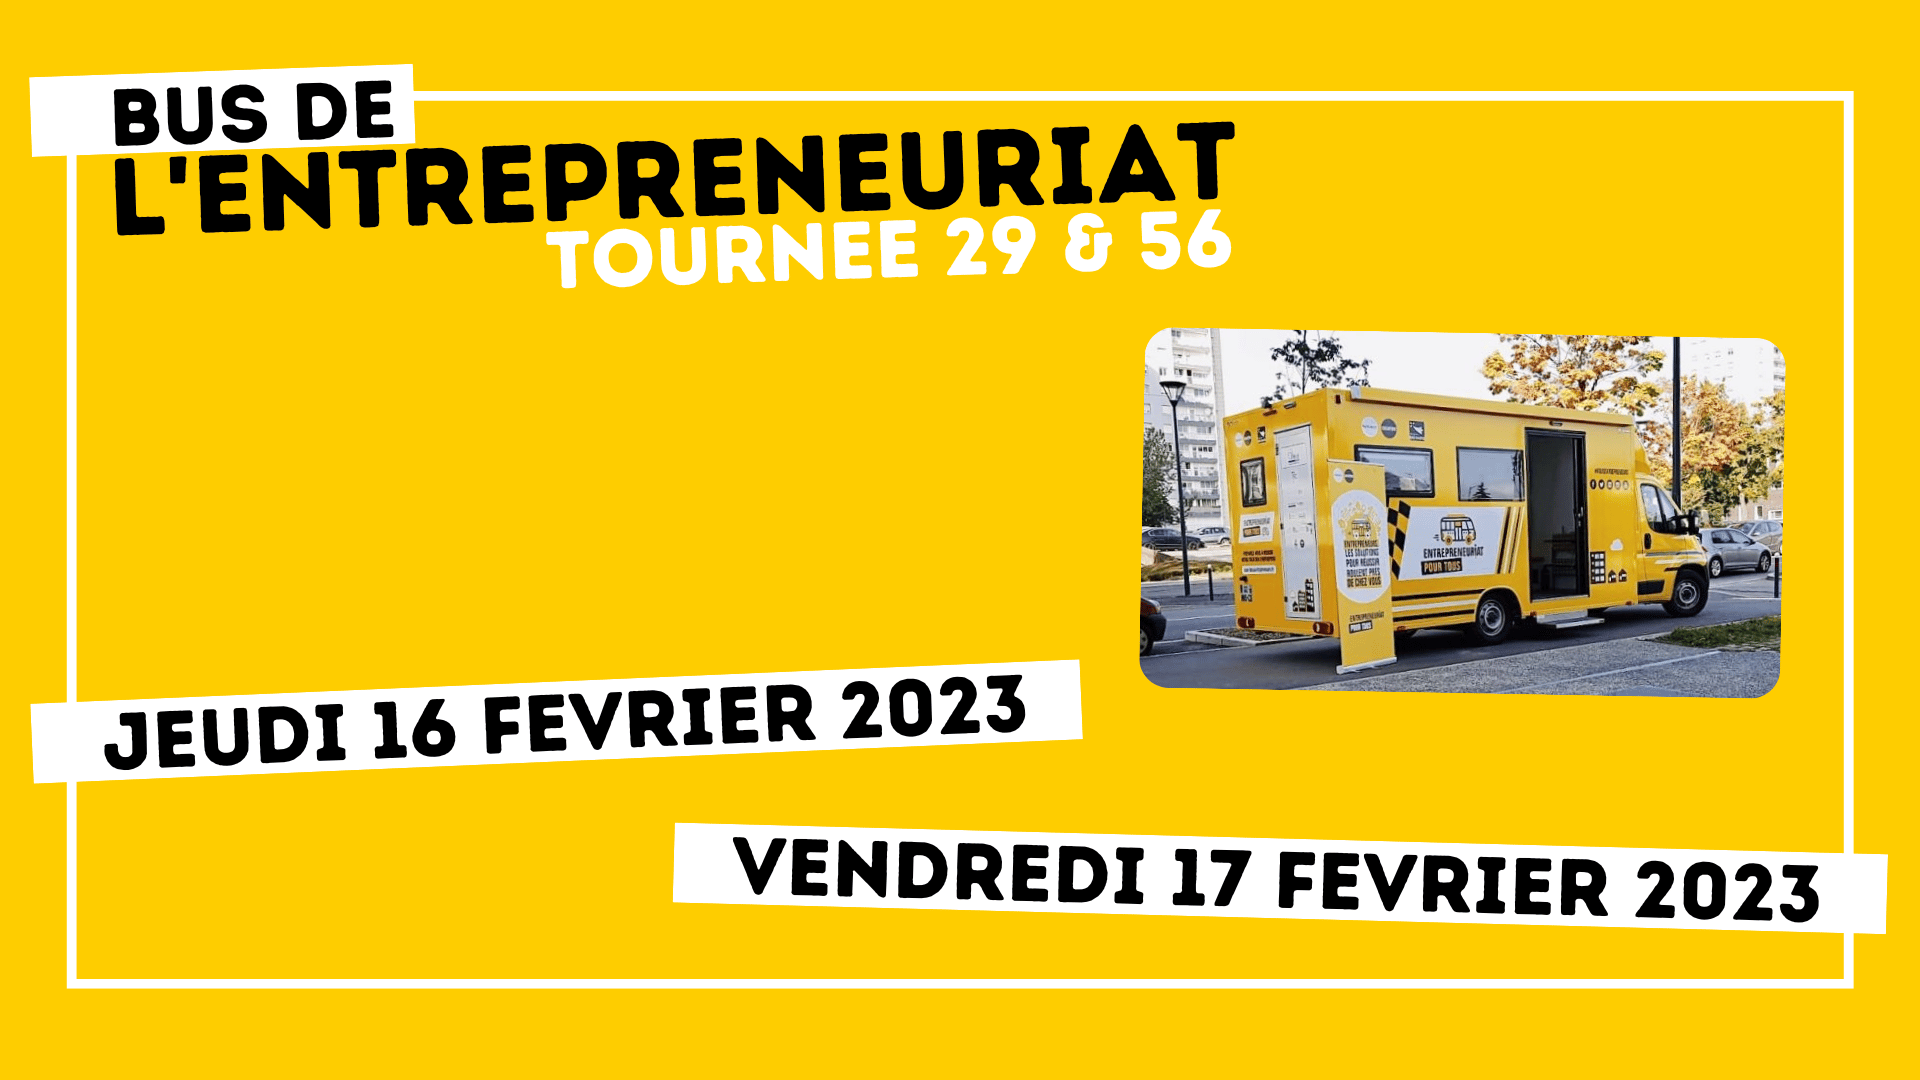 You are currently viewing Le bus de l’entrepreneuriat à Brest en février